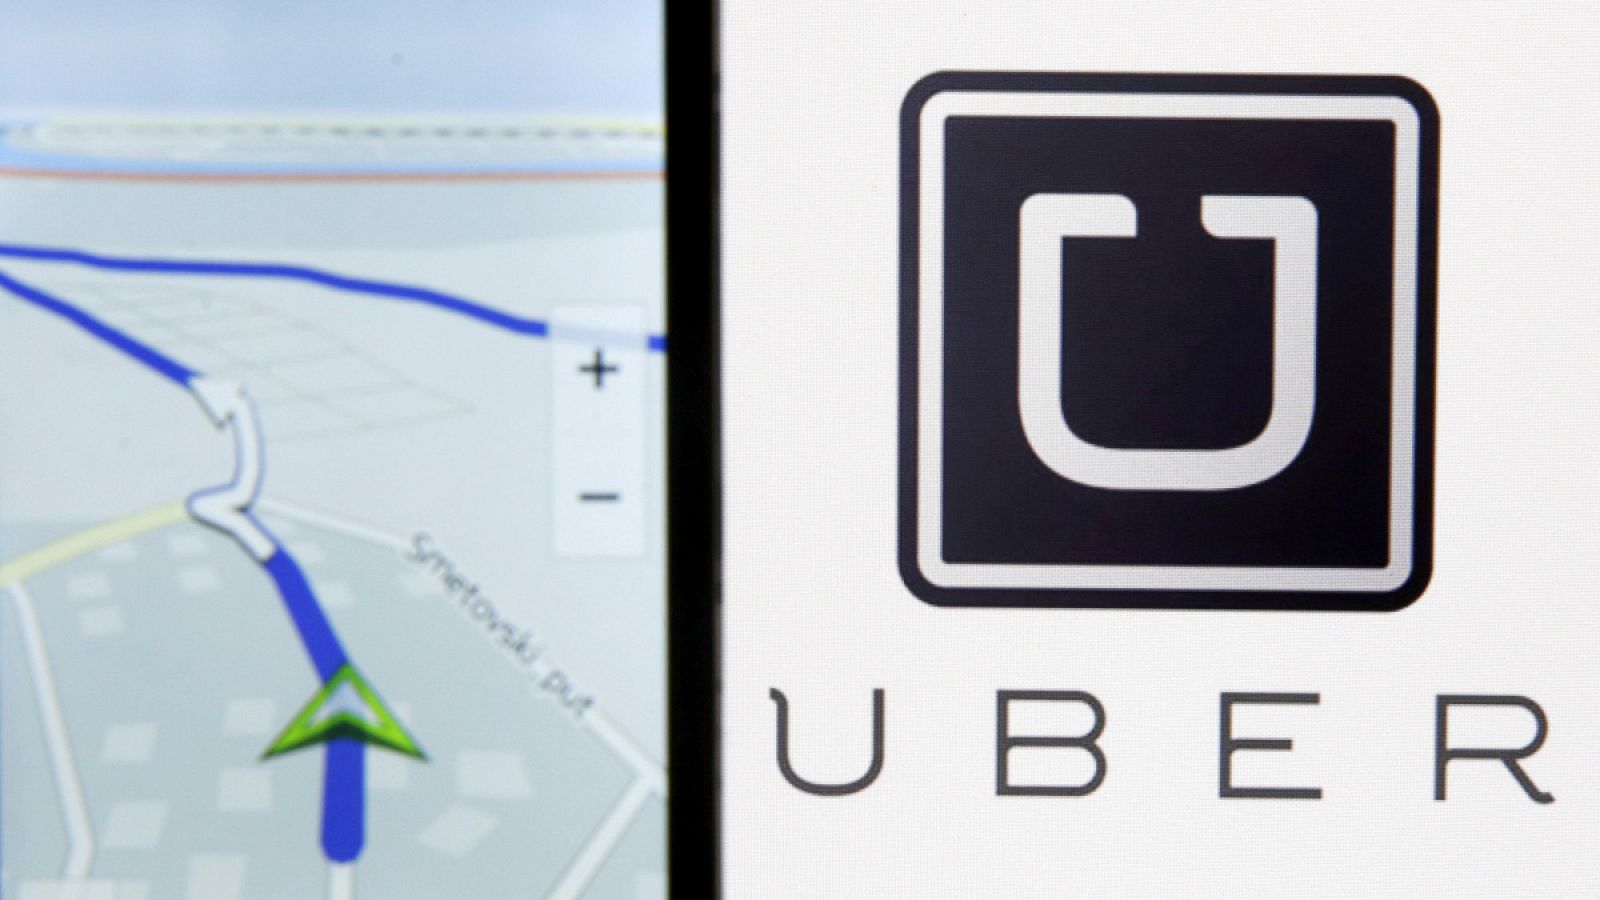 La aplicación Nokia Maps junto al logo de Uber